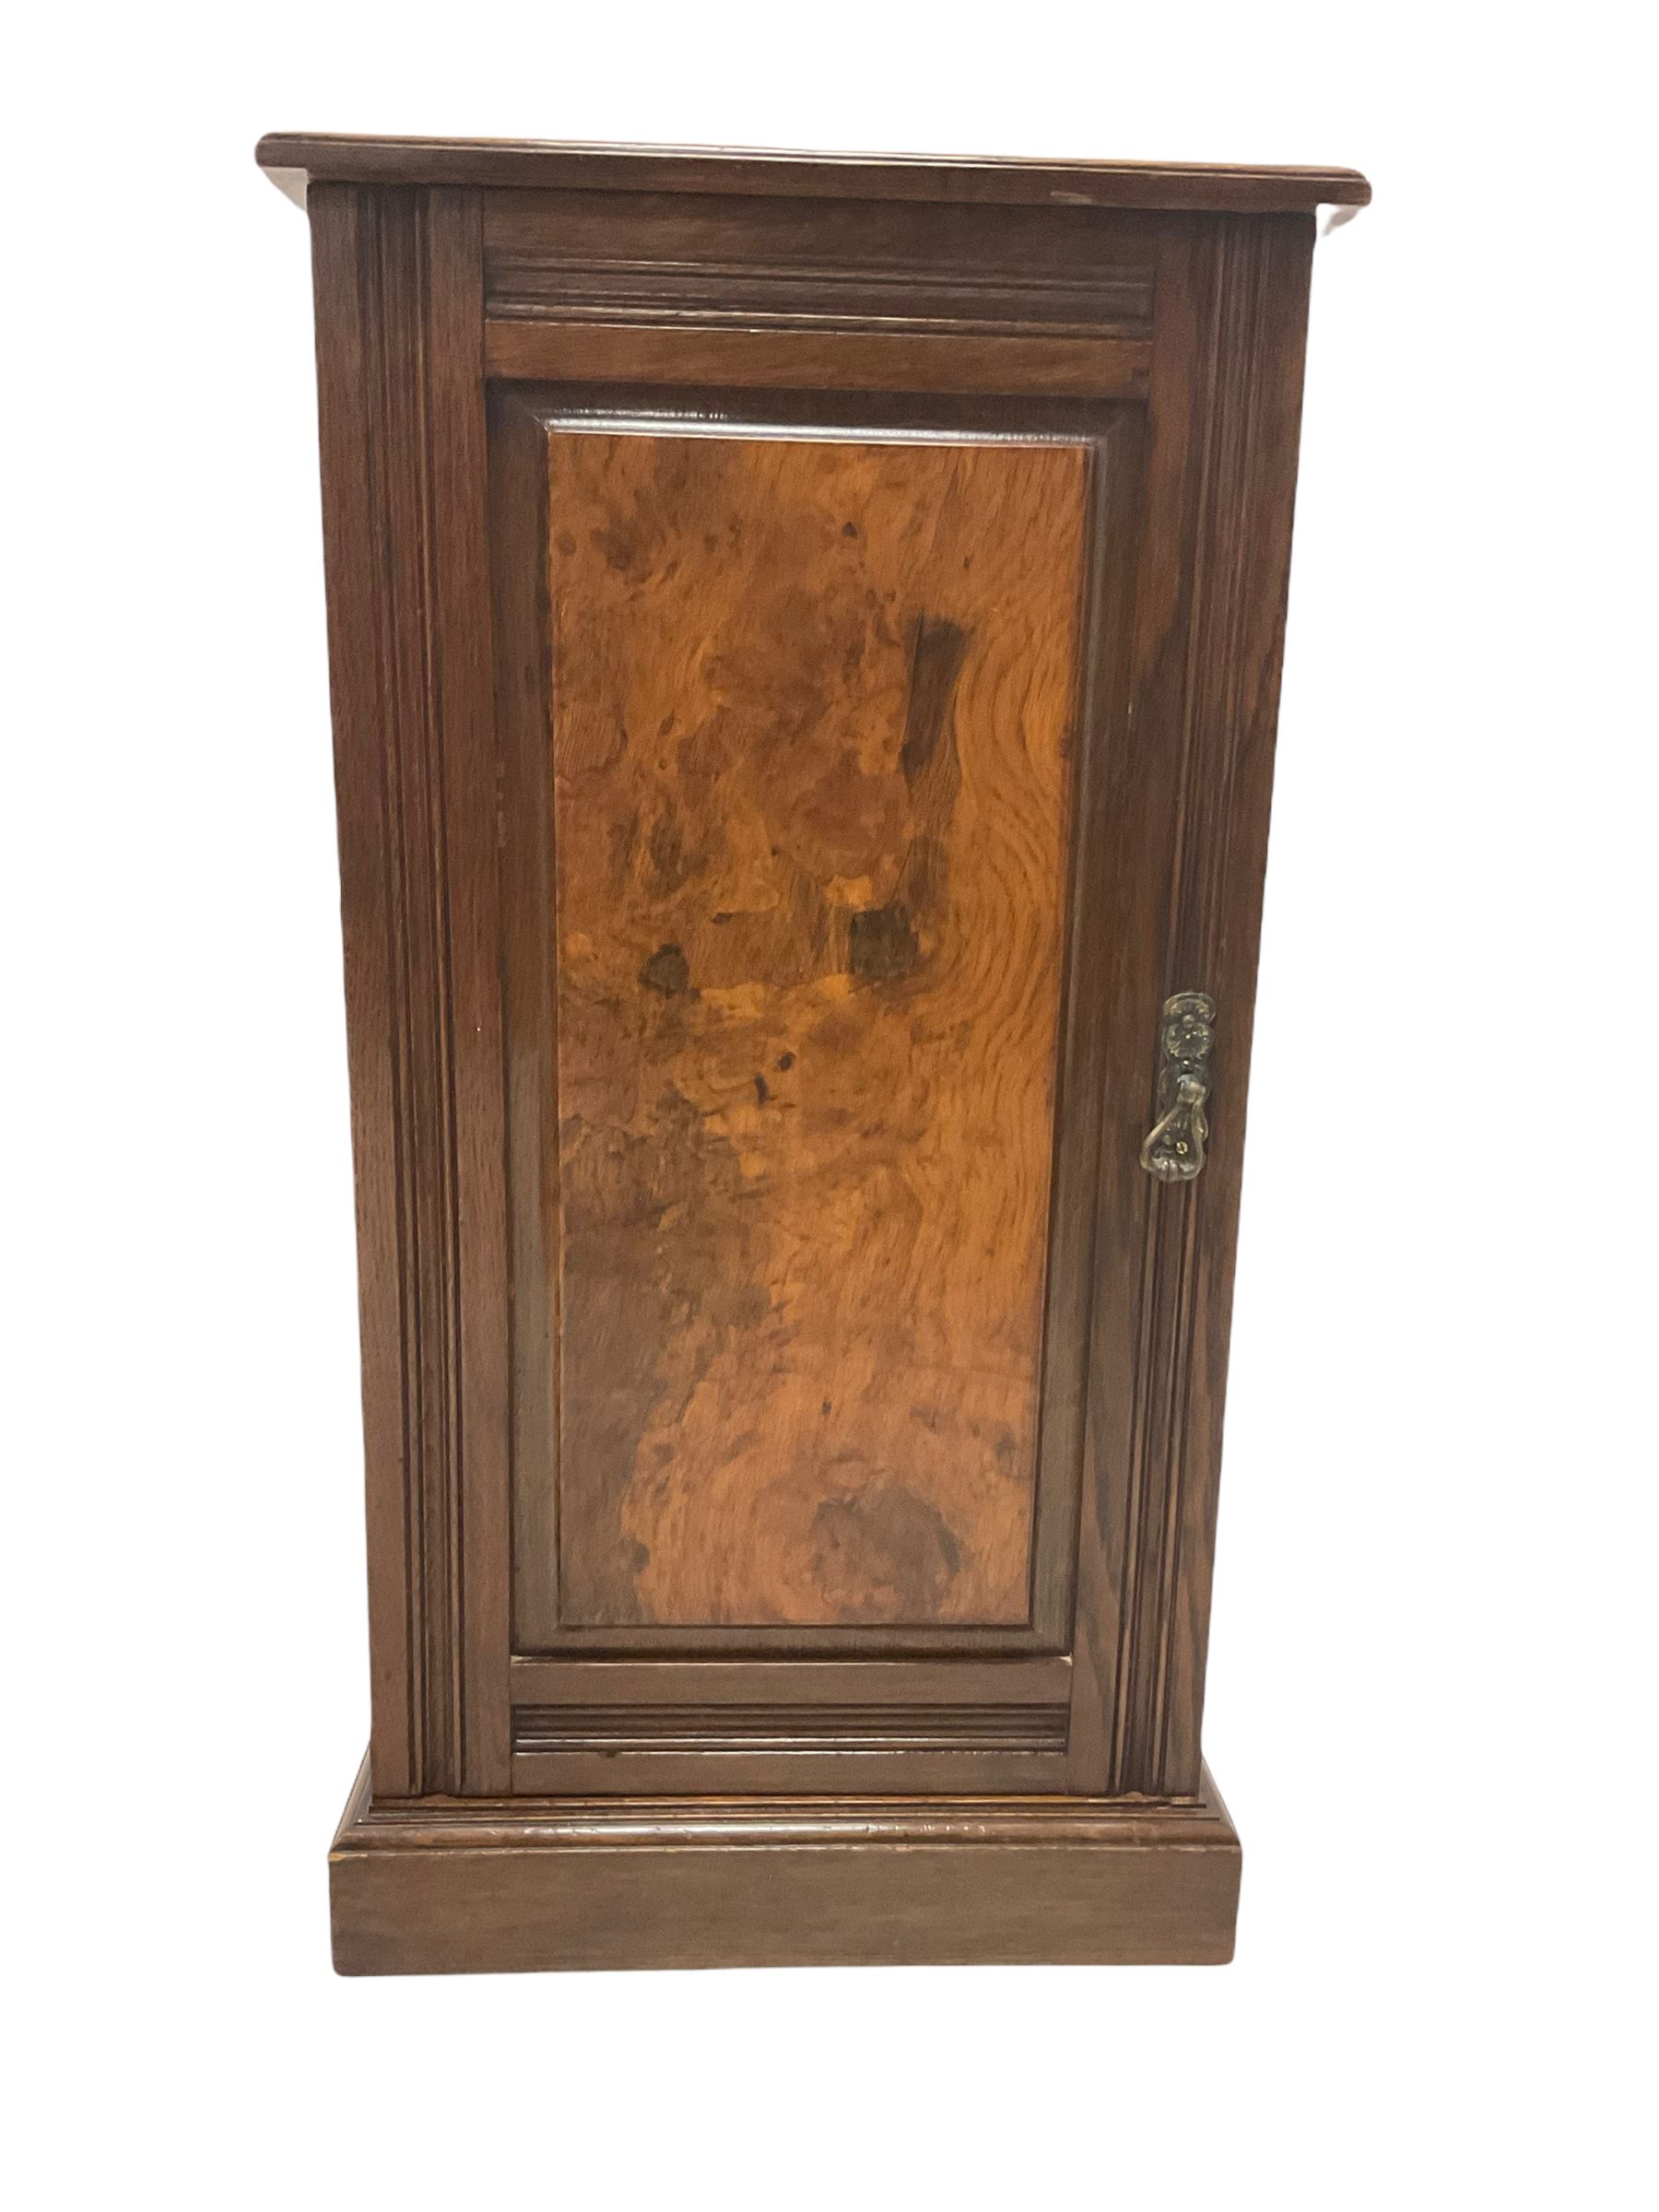 Early 20th century oak bedside cupboard - Image 2 of 4